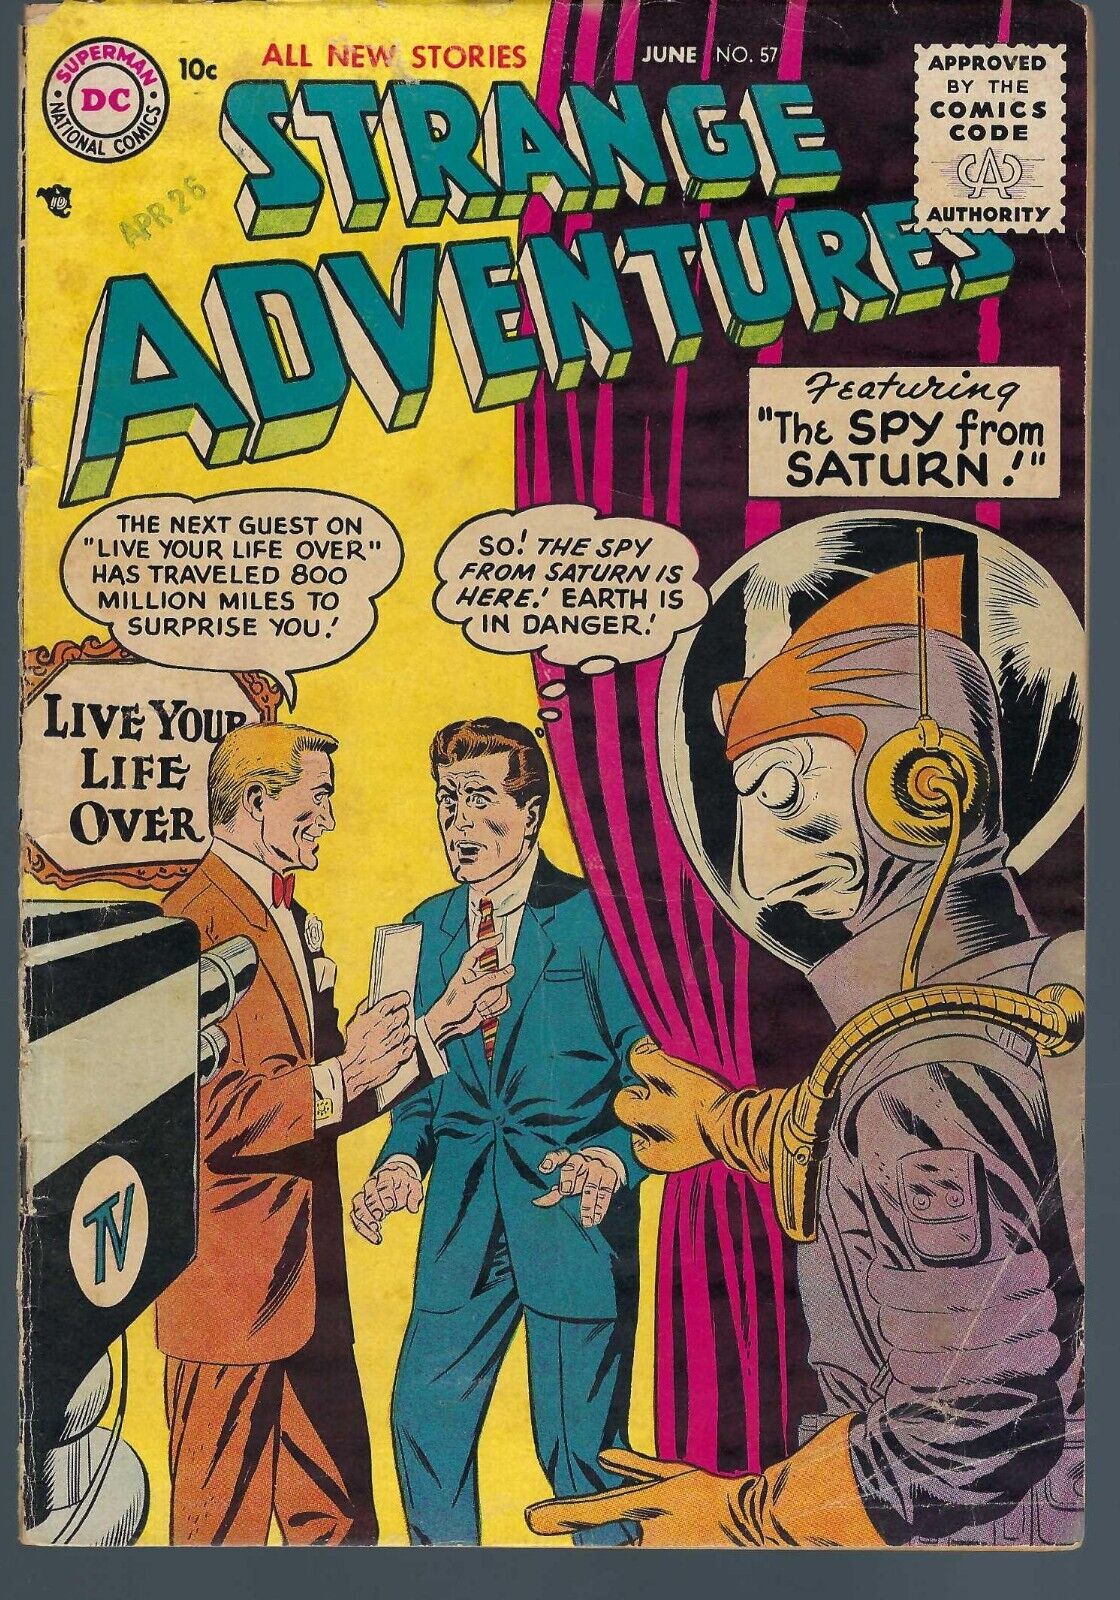 STRANGE ADVENTURES #57 June 1955 in VG+ DC Comics